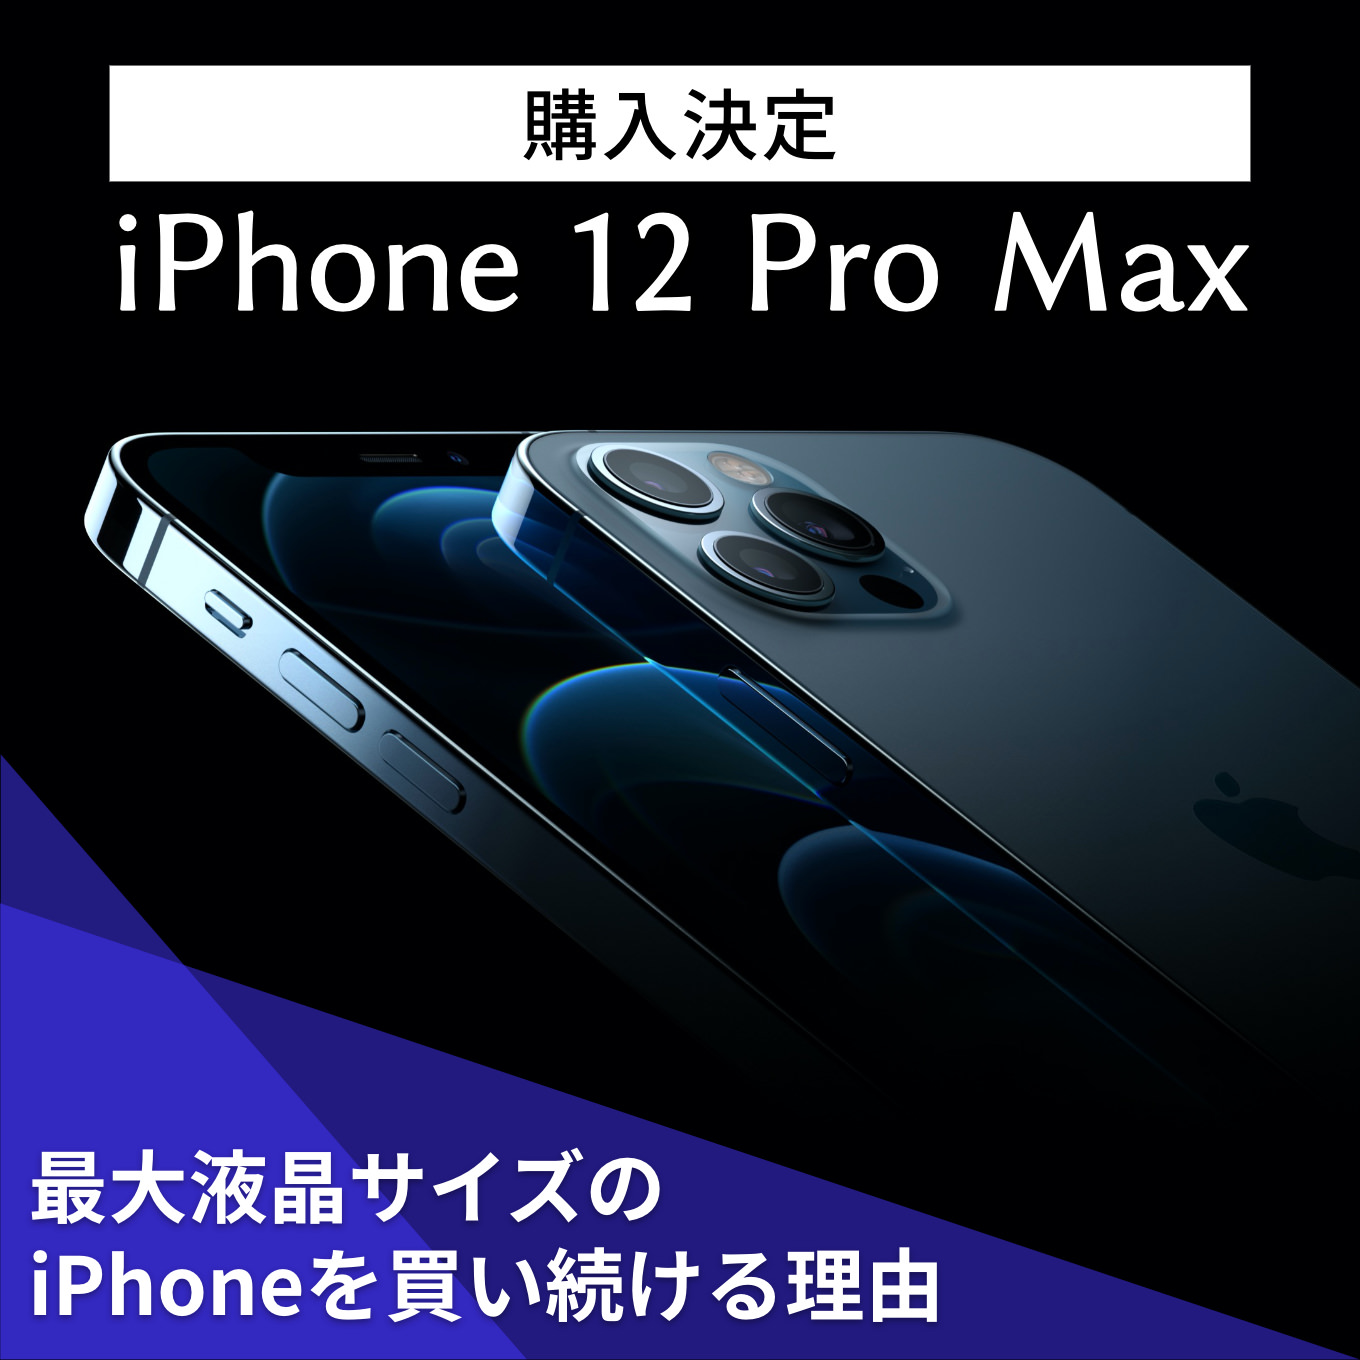 iphone12promax-wo-kauriyu